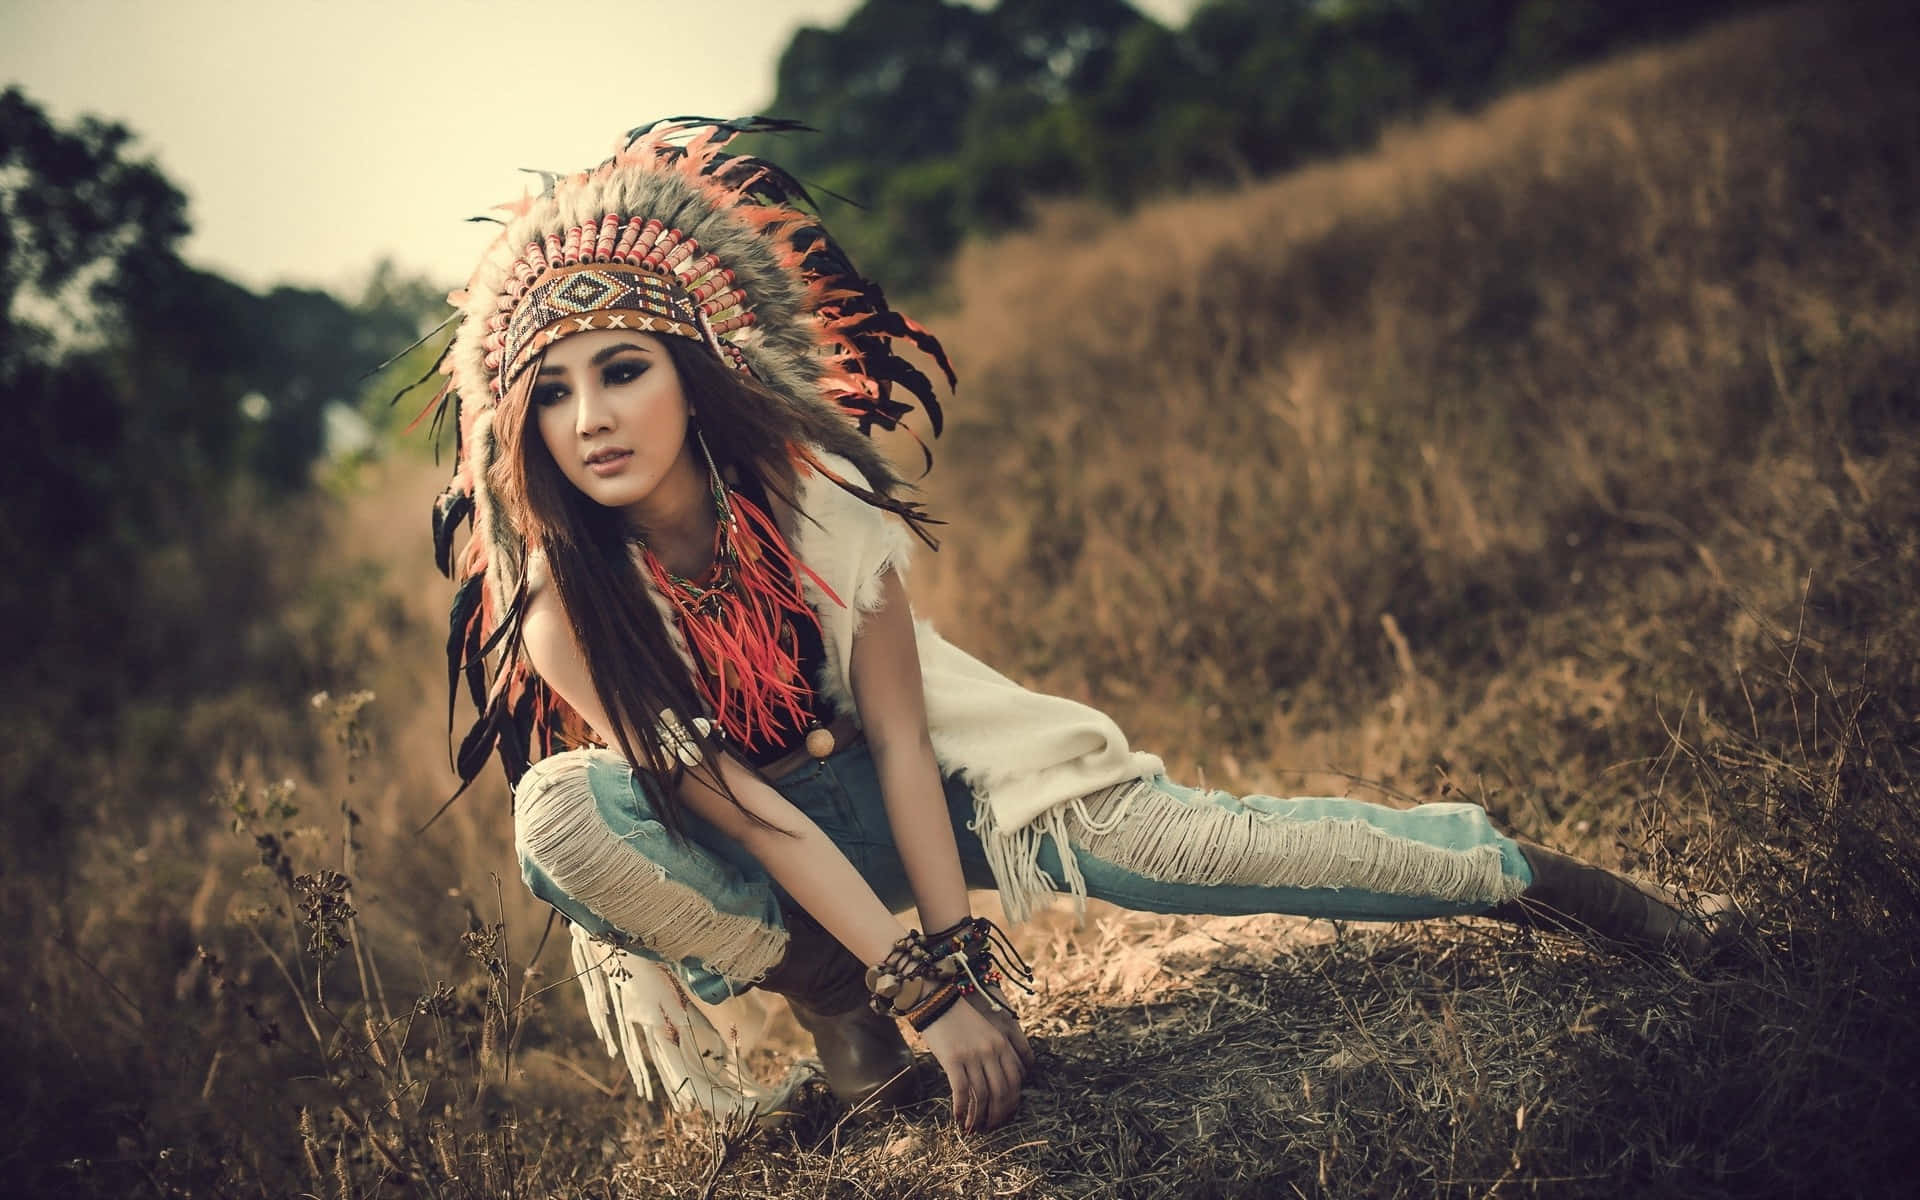 Enkvinna Med En Amerikansk-indiansk Huvudbonad Poserar På En Äng Wallpaper